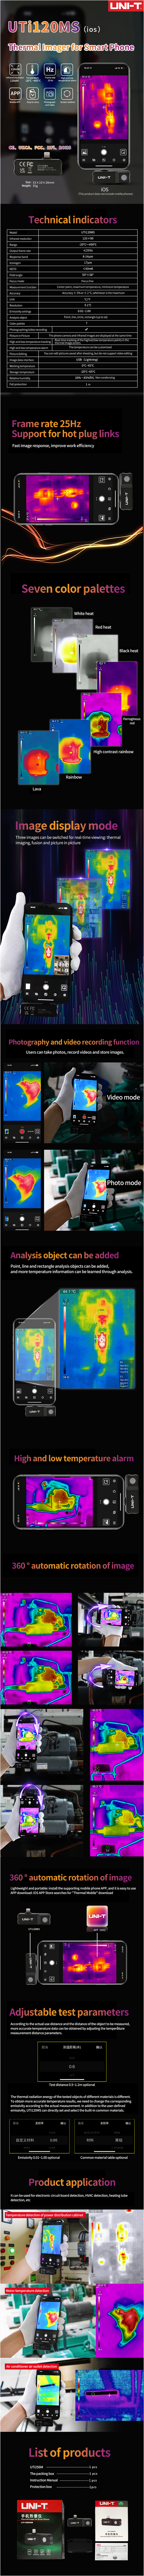 UTi120ms, kamera termowizyjna do smartfona, kamera termowizyjna przystawka do iPhone'a